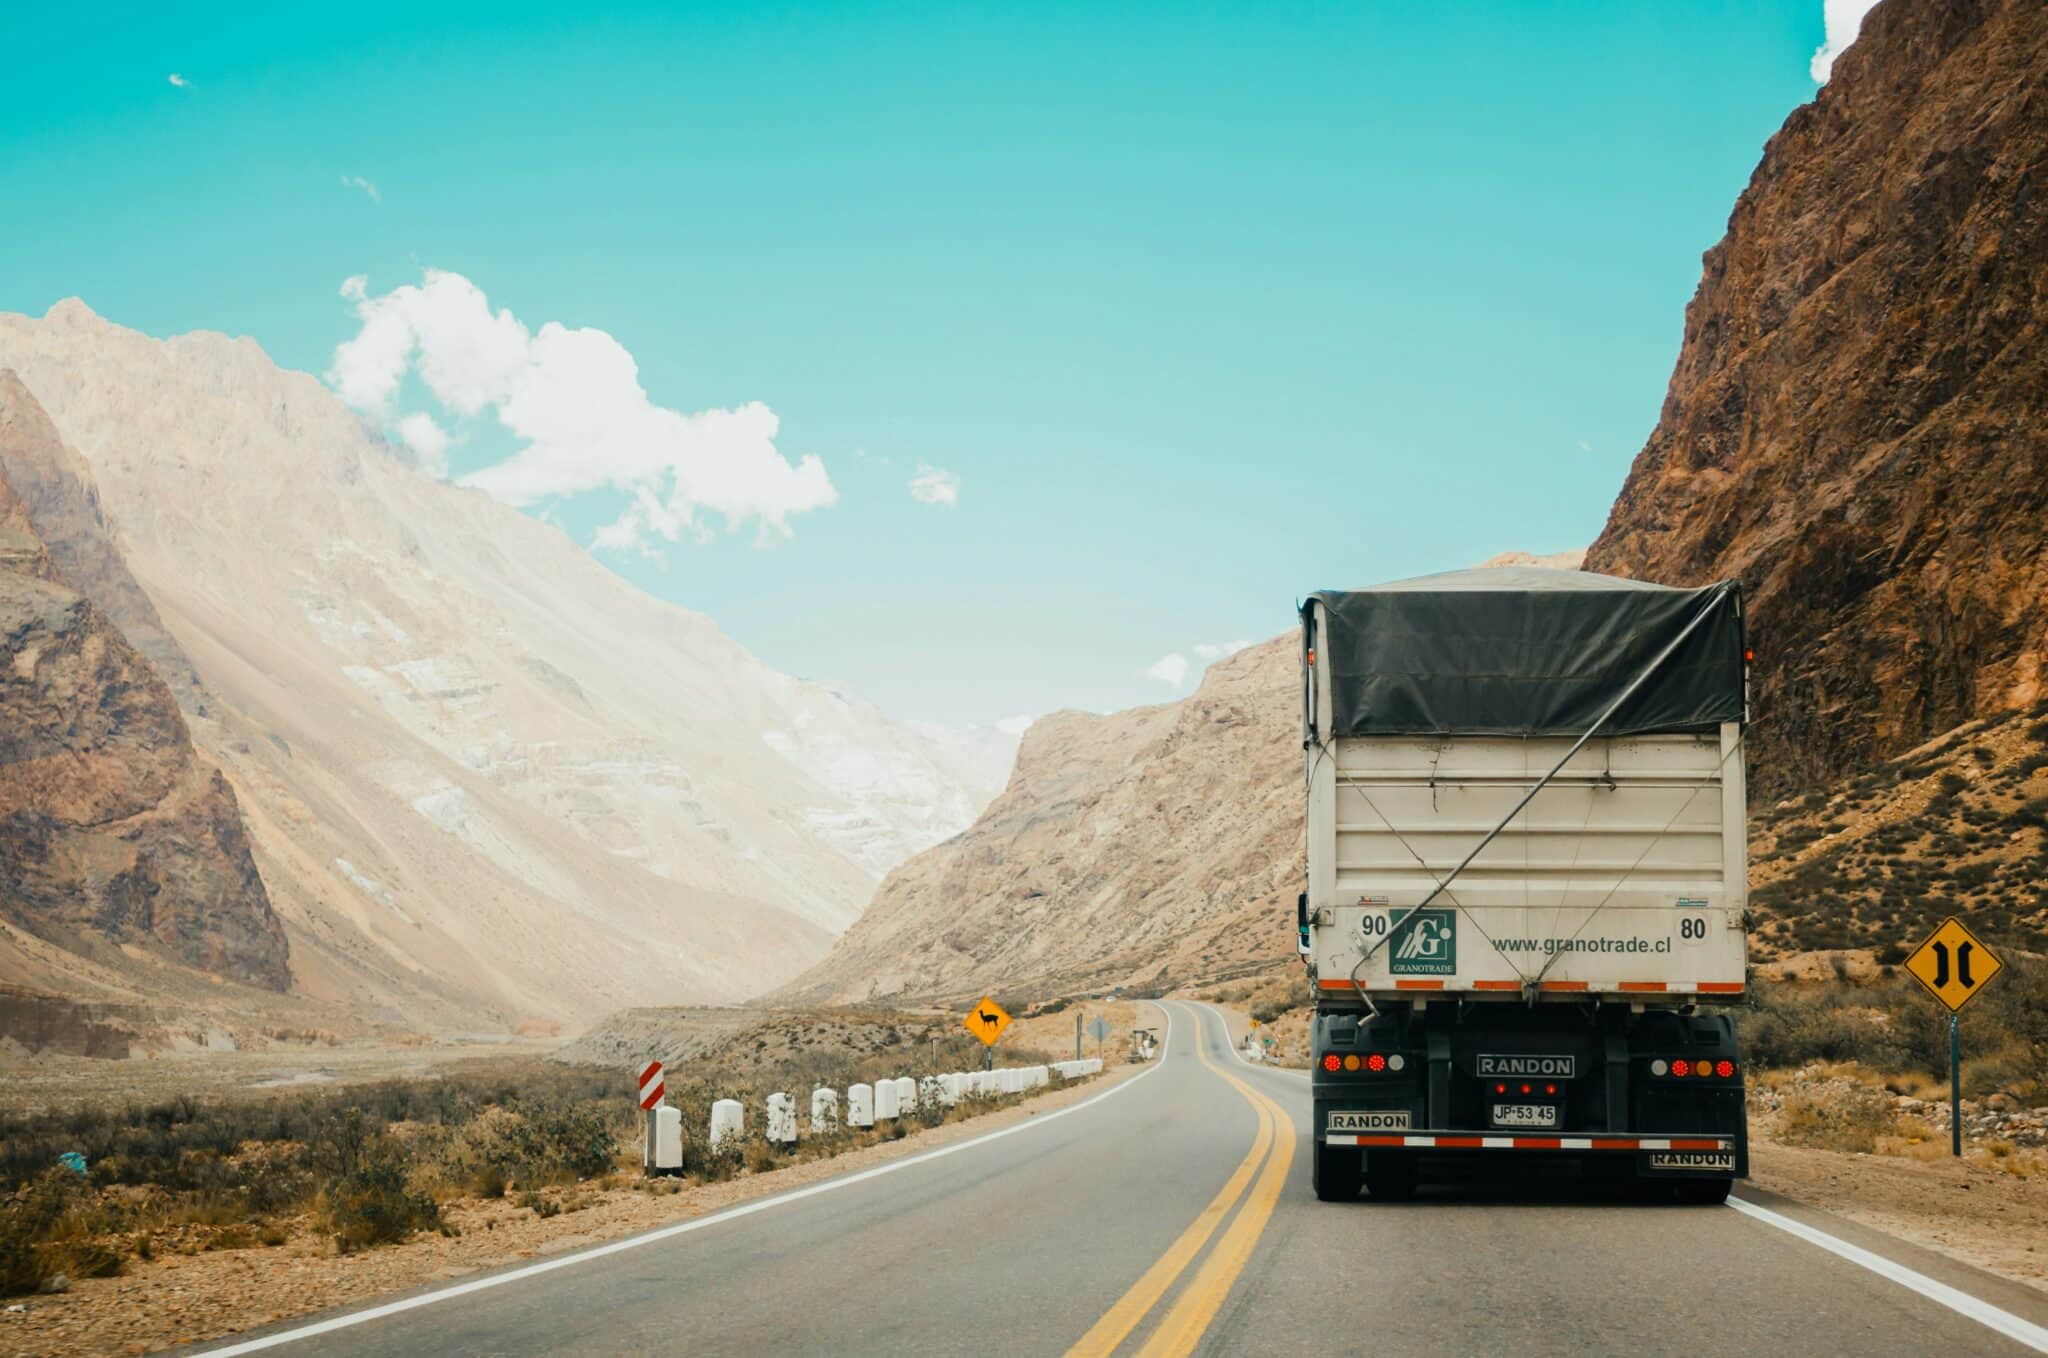 location de camions pour tous vos besoins de transport - découvrez nos services de location de camions pour déménagement et transport de marchandises.